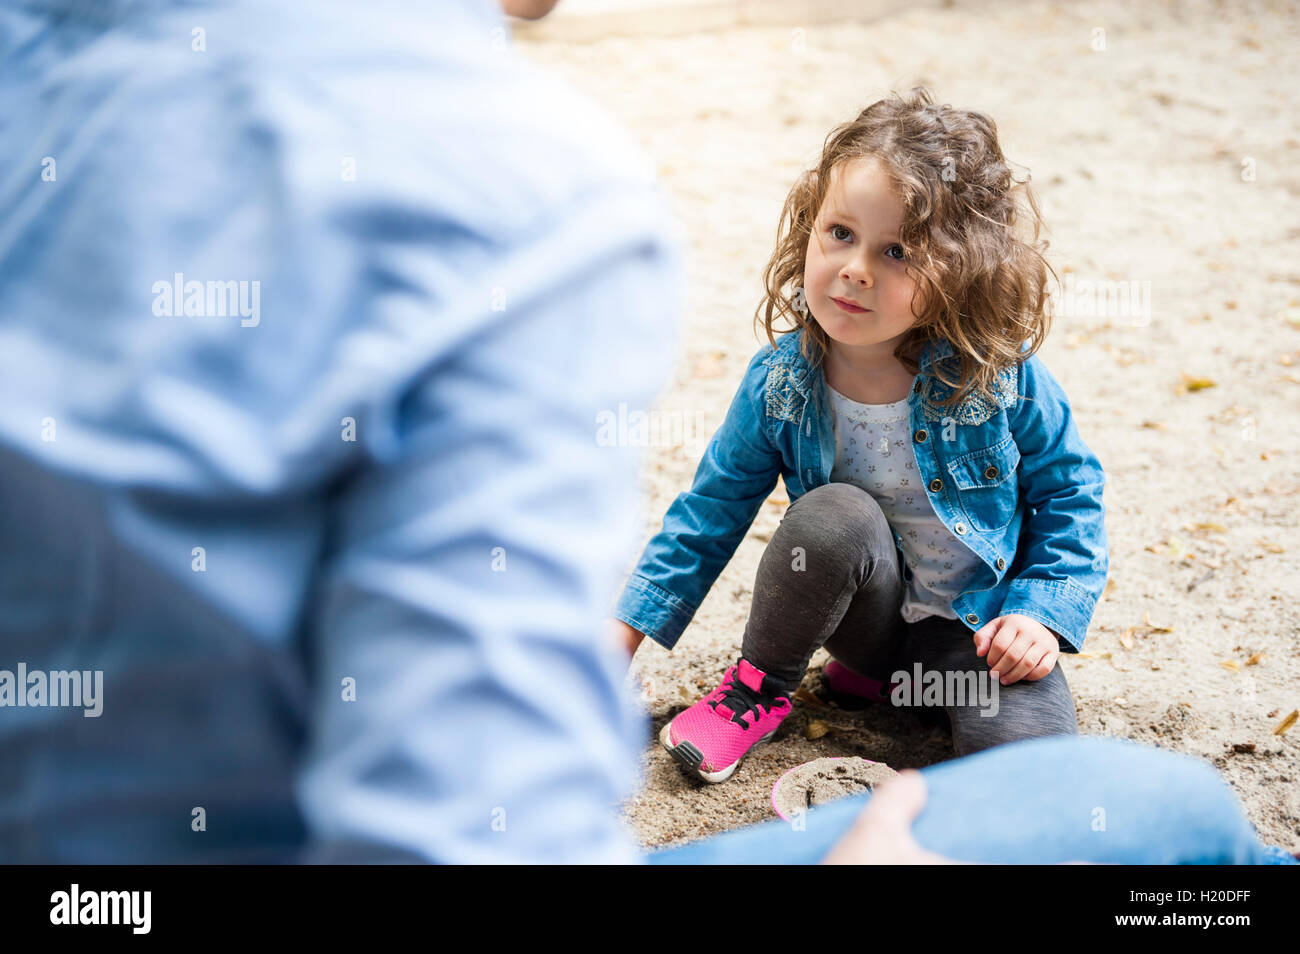 Padre giocando con la figlia in sandbox Foto Stock